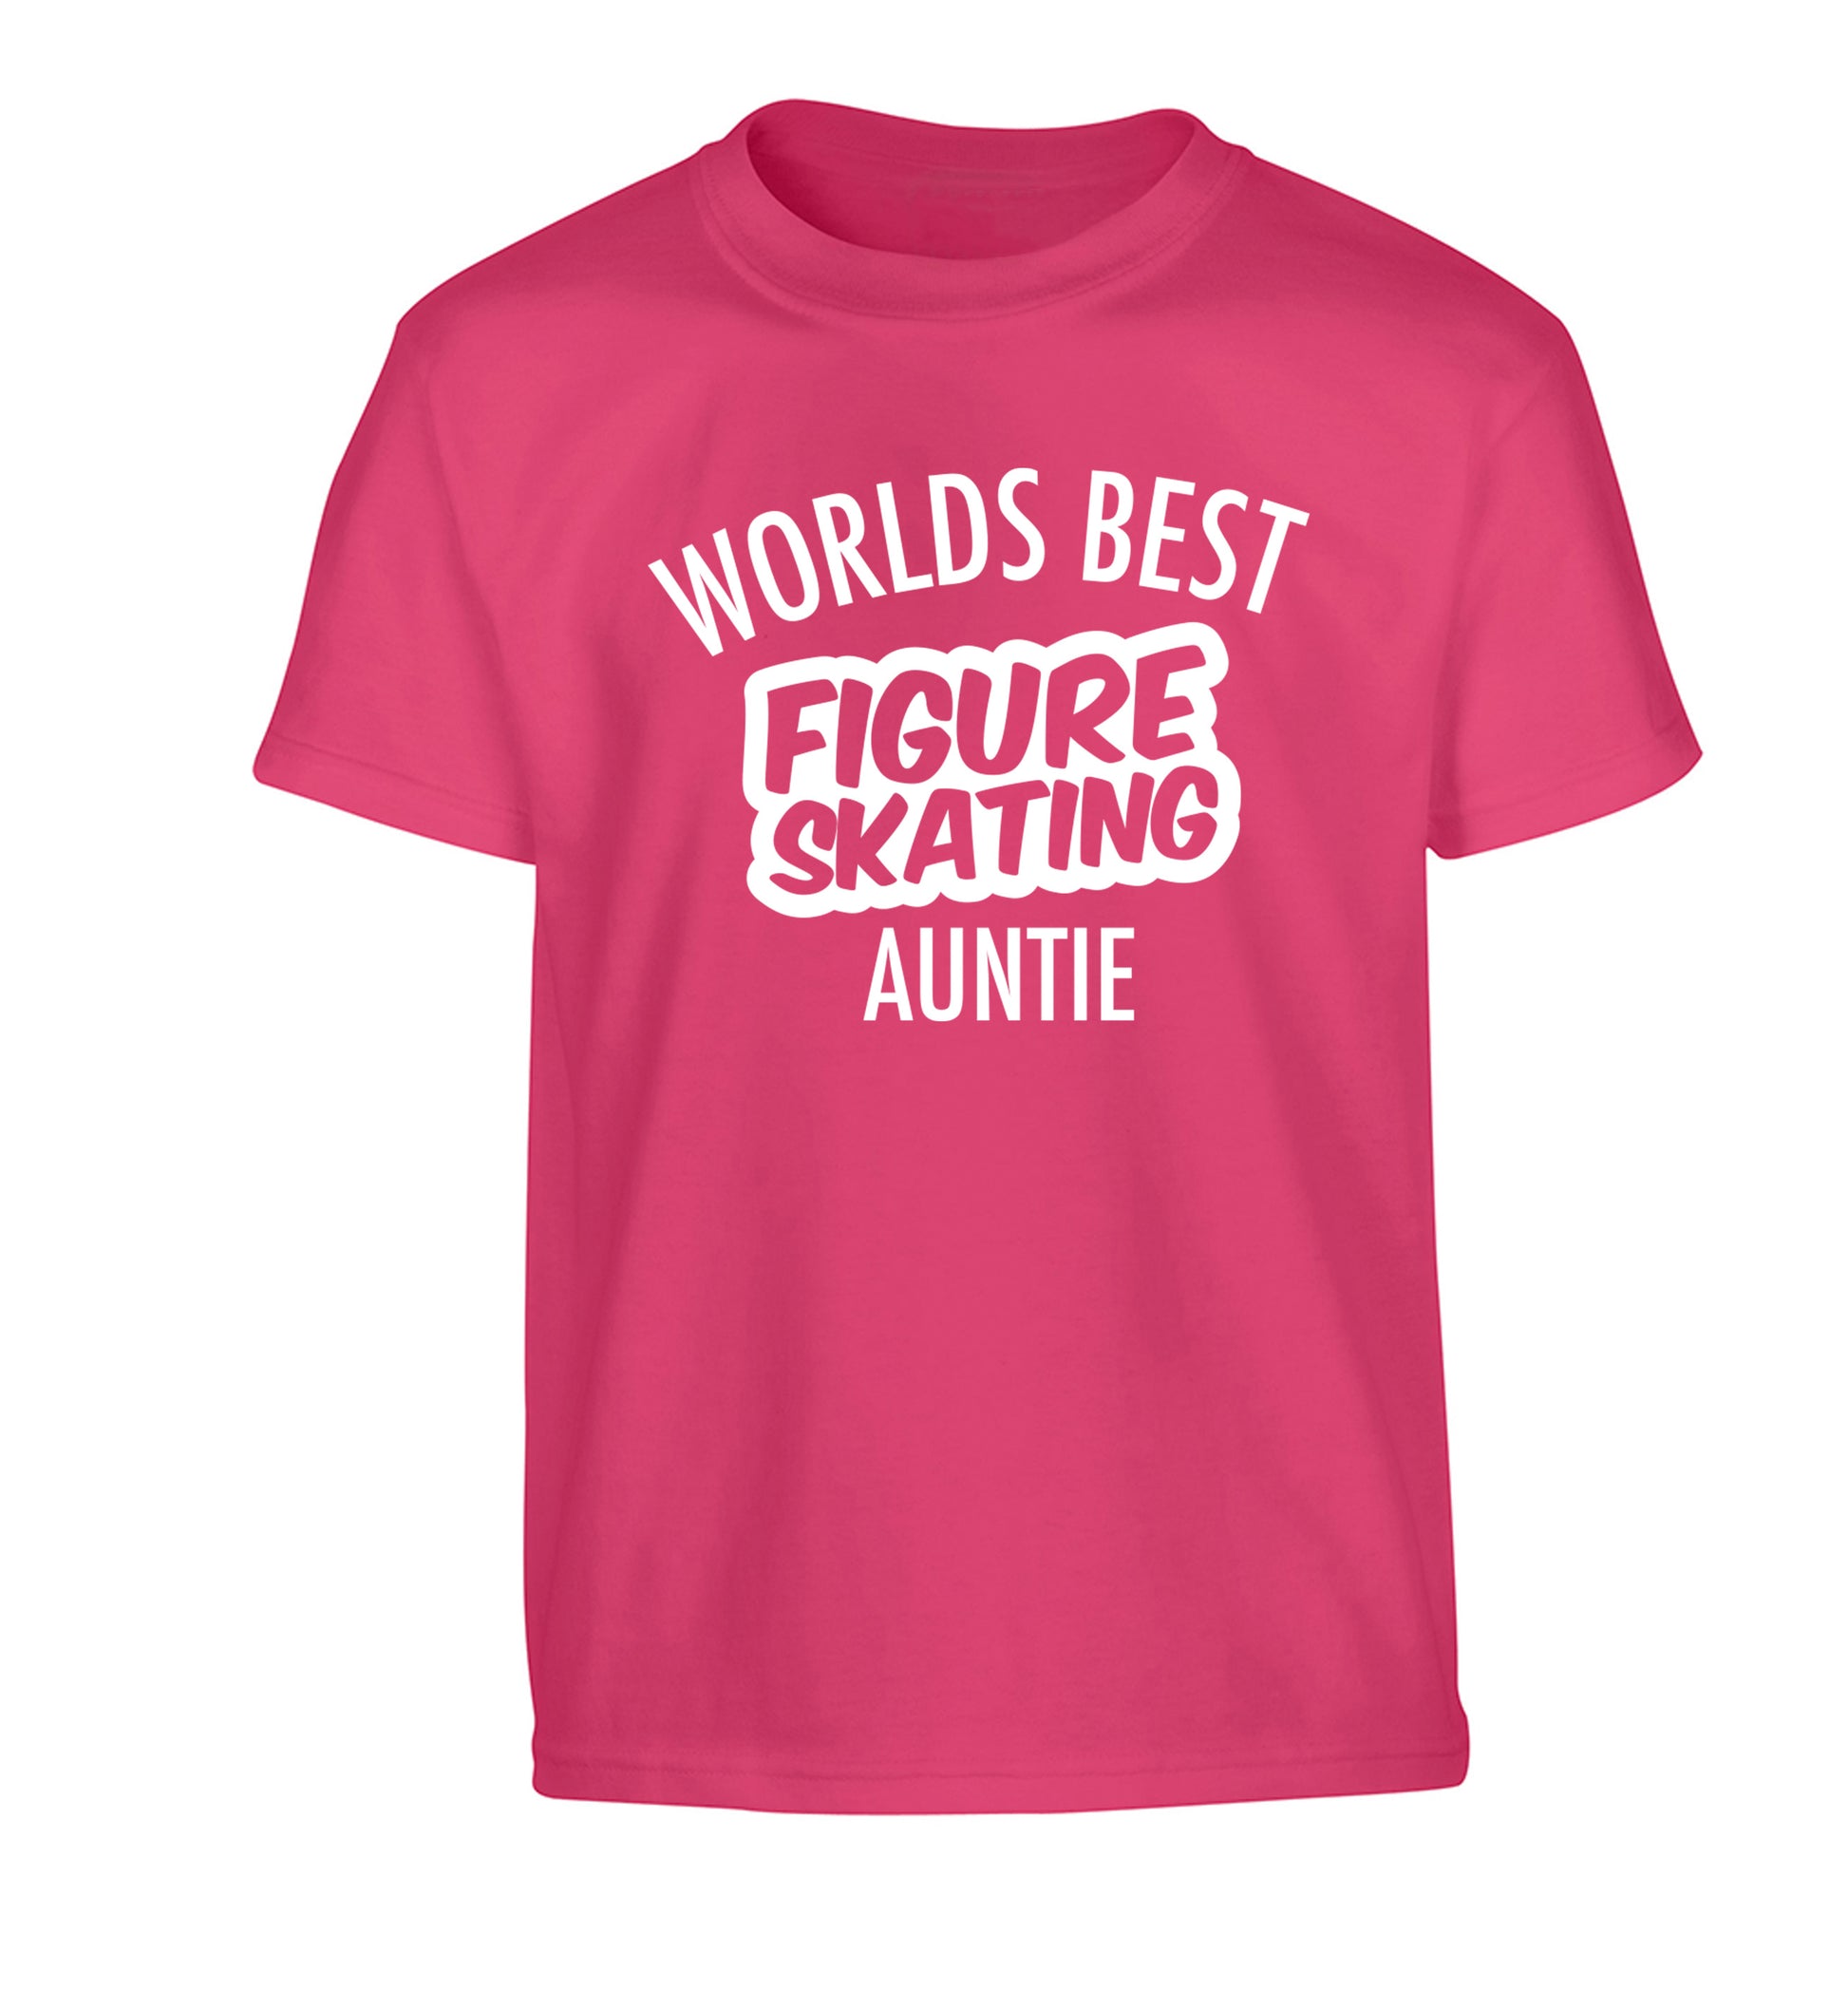 Worlds best figure skating auntie Children's pink Tshirt 12-14 Years